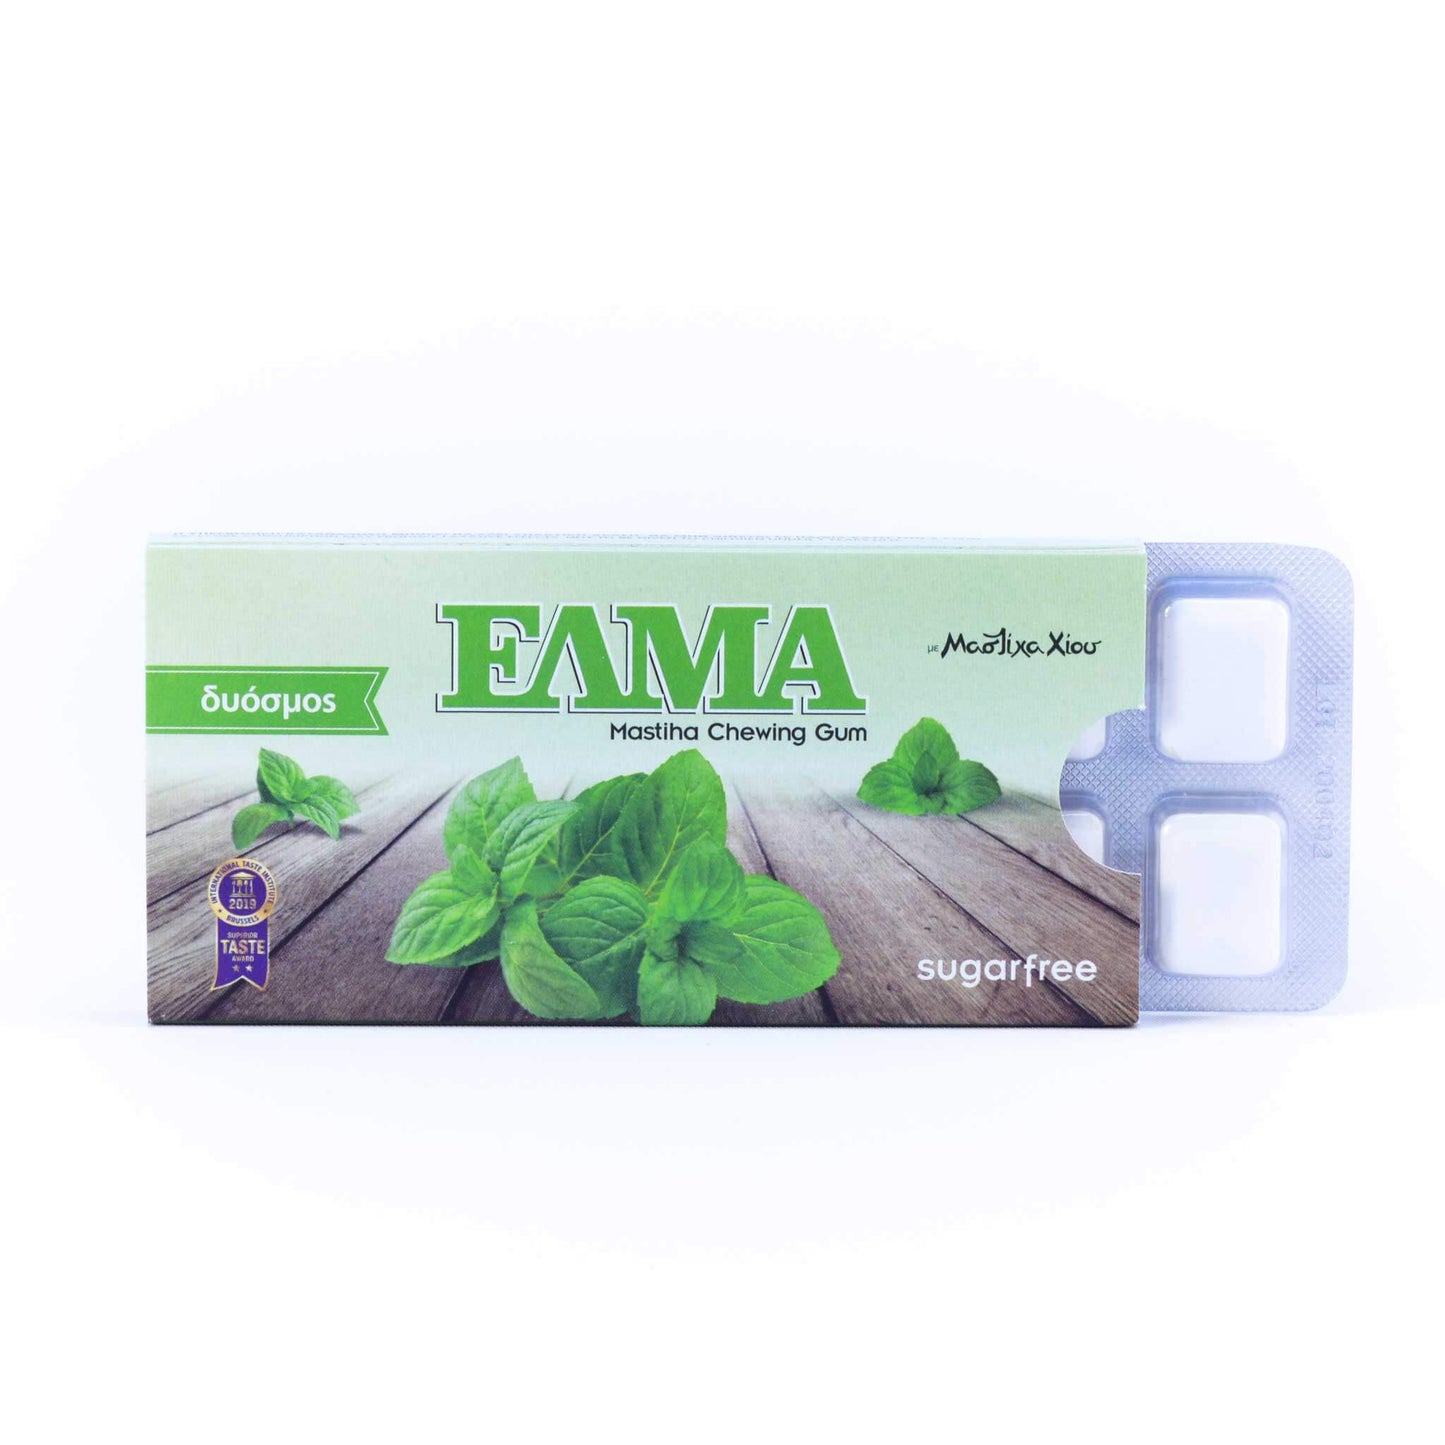 ELMA Spearmint with mastic gum